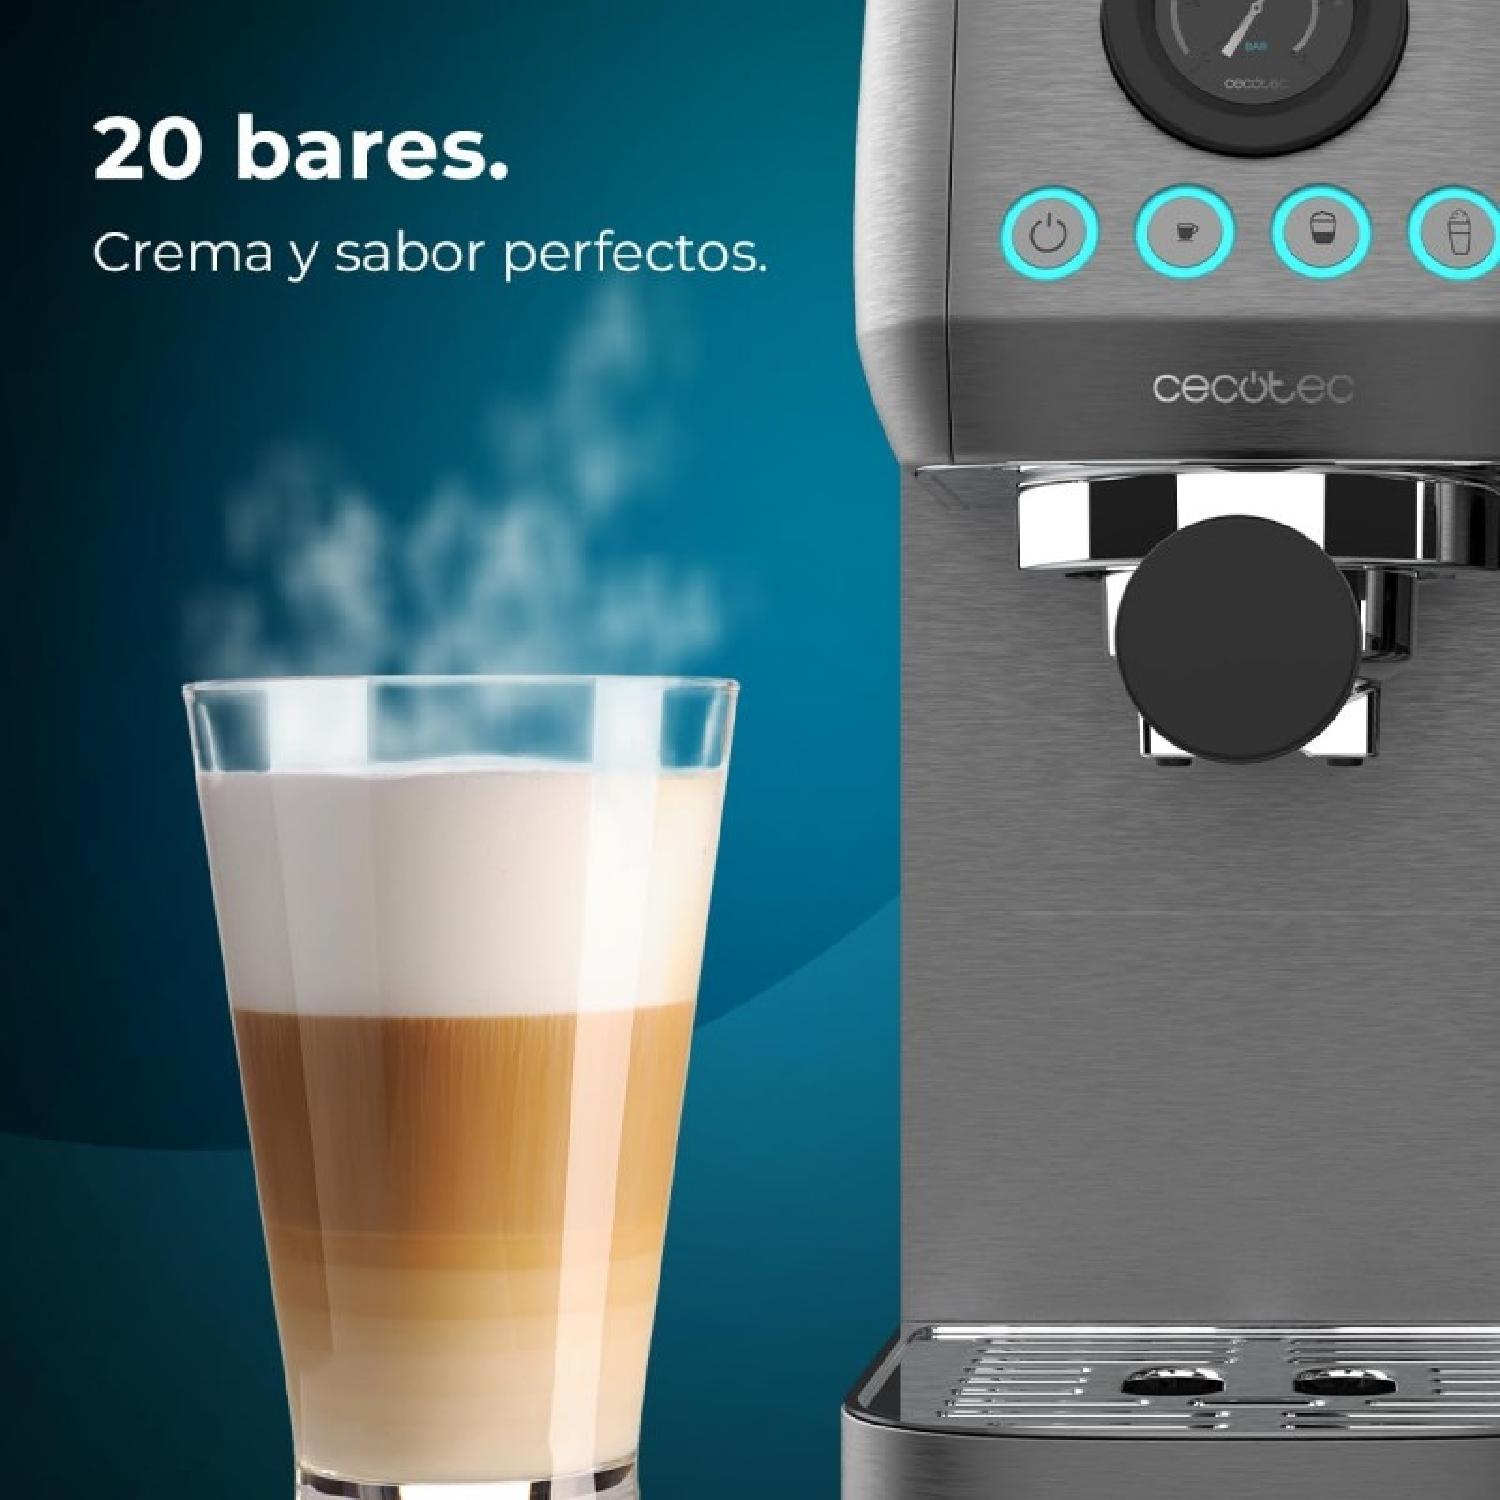 Macchine del caffè semiautomatiche Power Espresso 20 Steel Pro Latte Cecotec